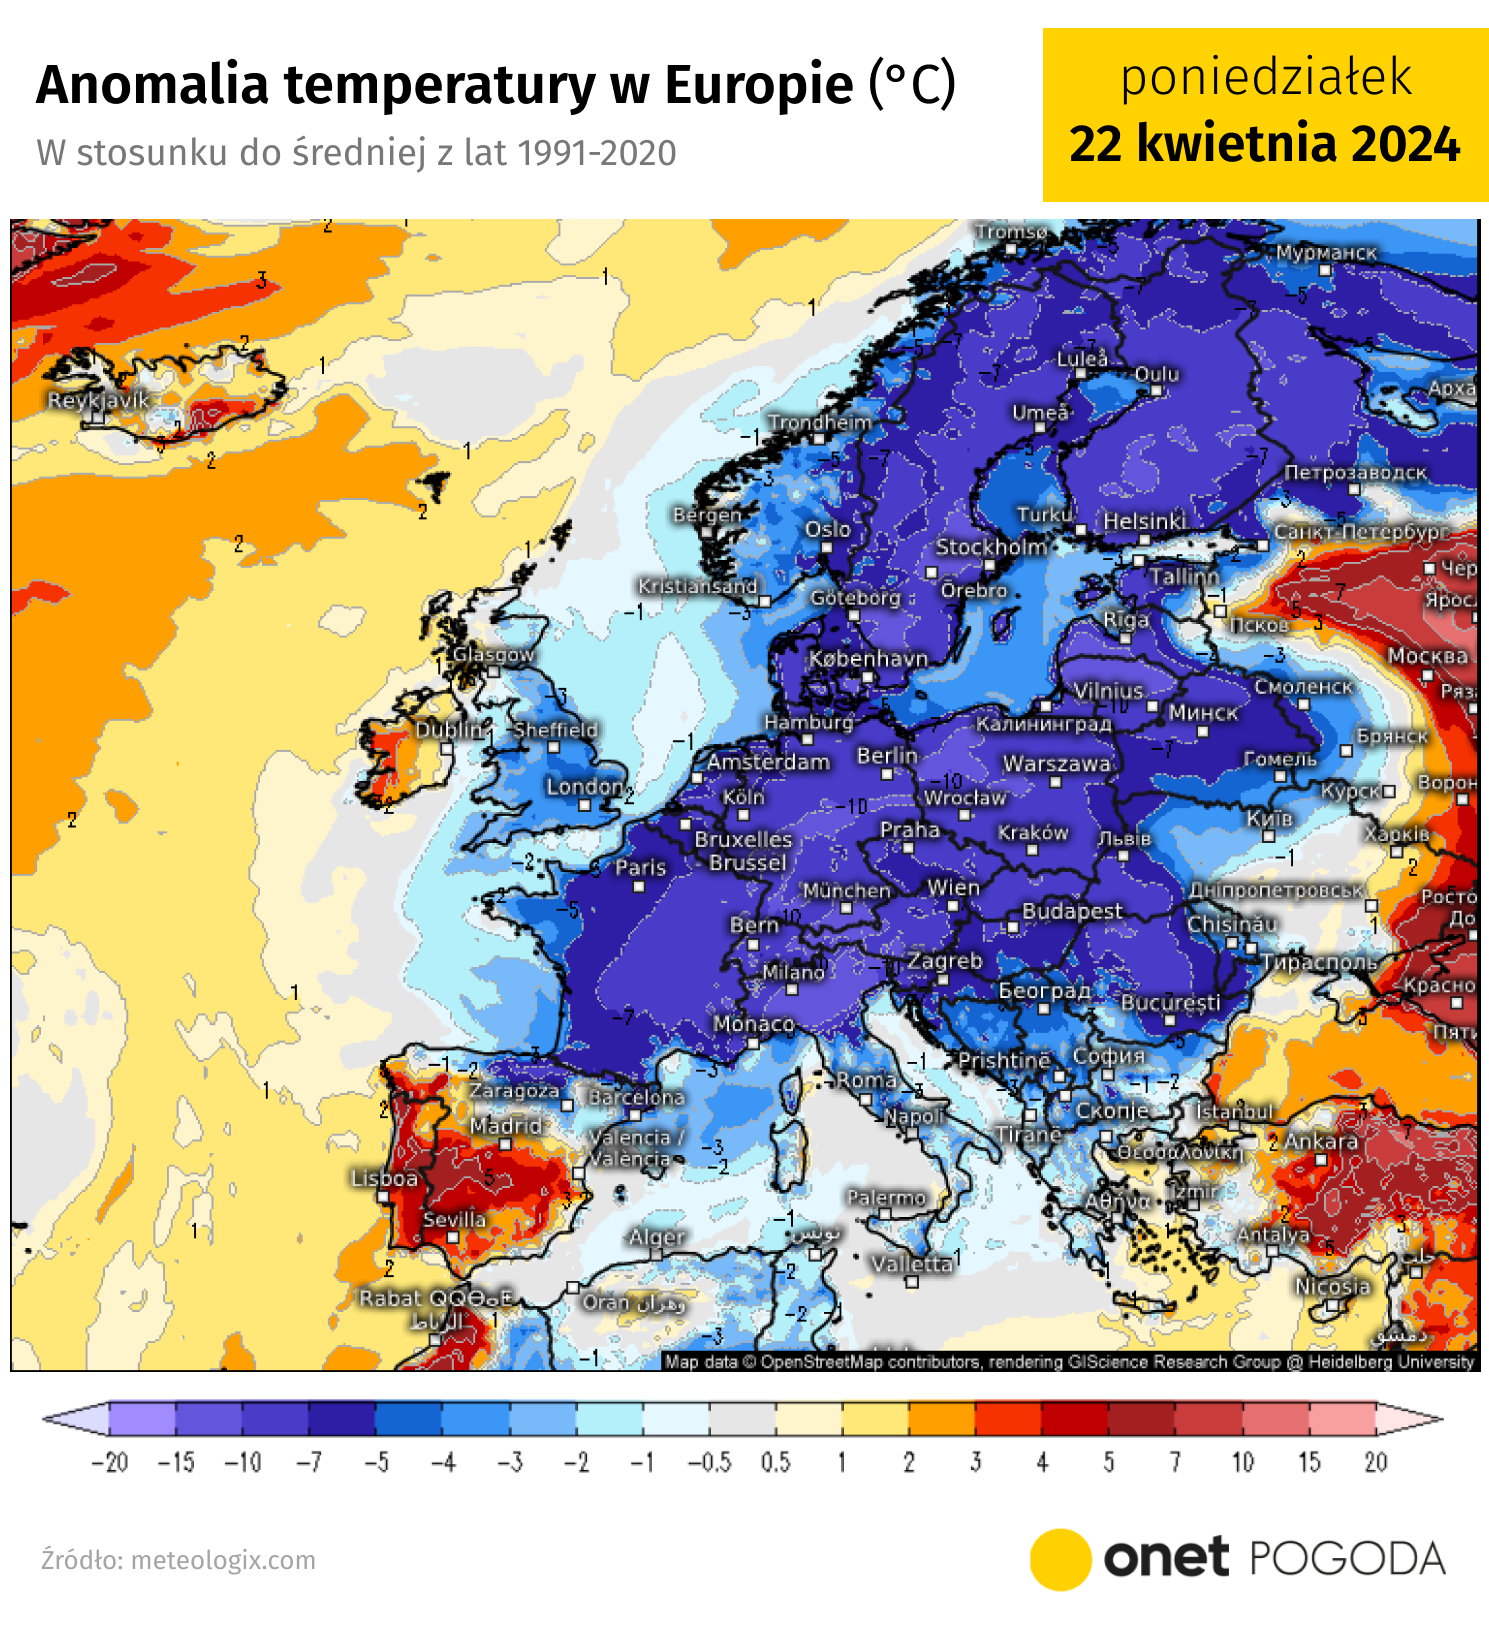 europa w uścisku arktycznego zimna. przejdą śnieżyce i zaatakuje mróz